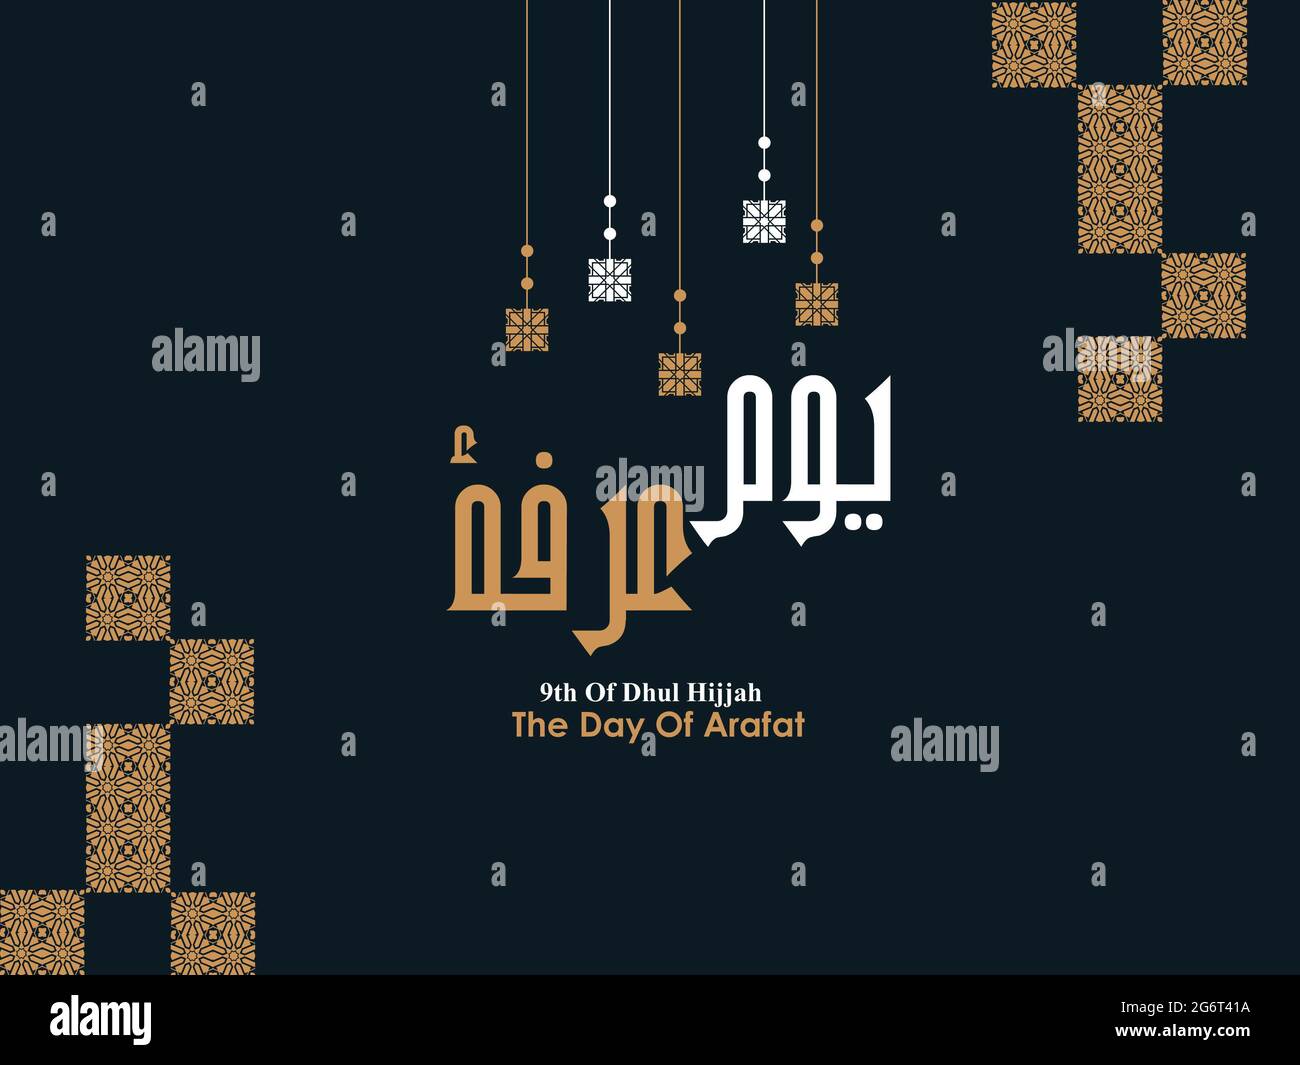 Translation The Day Of Arafat. Hajj pilgrimage or Eid mubarak greeting card. Stock Photo